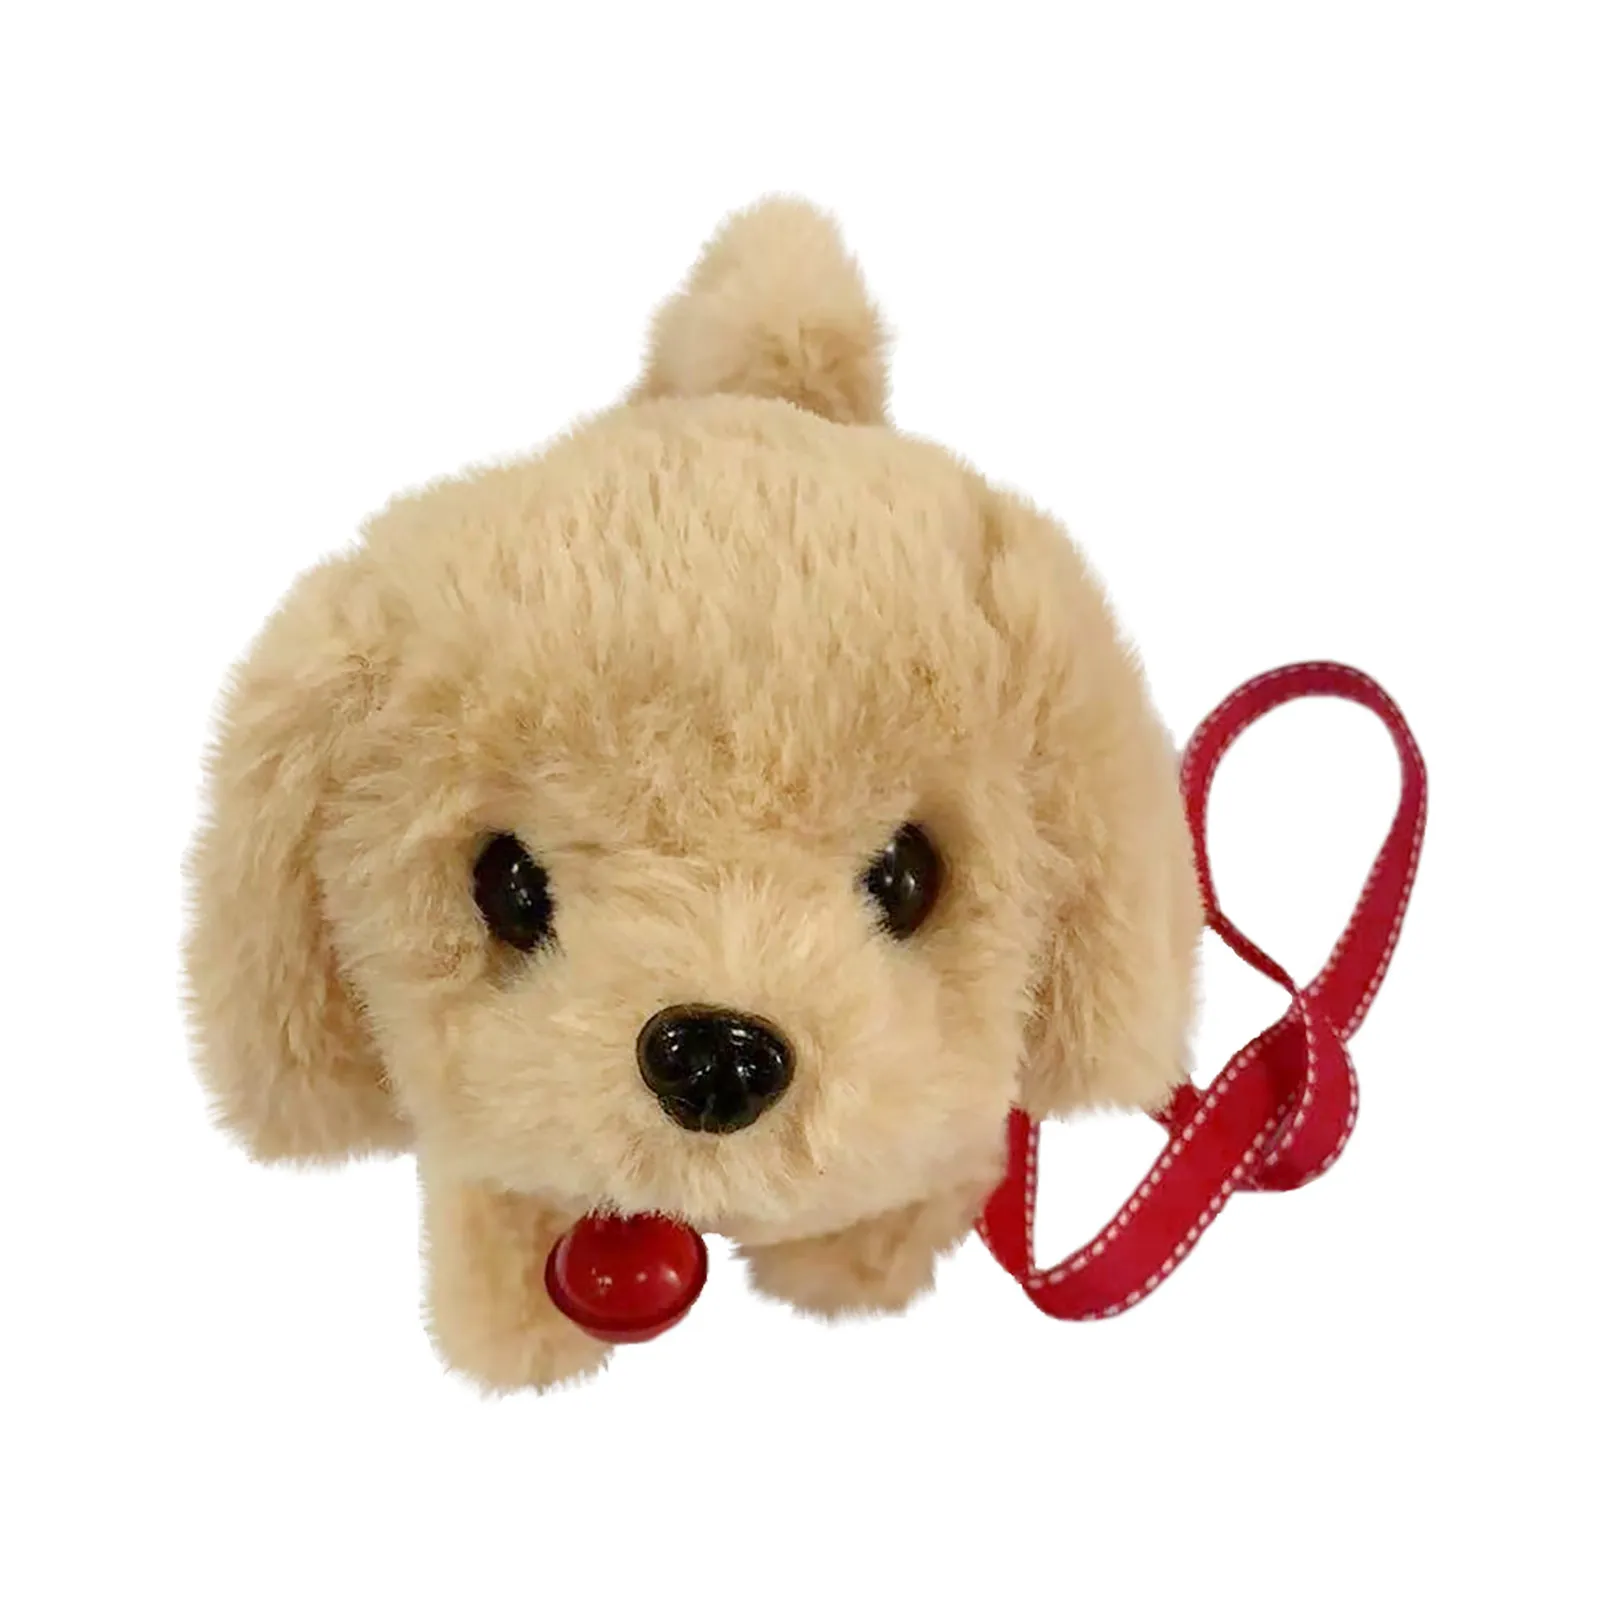 Nouveau jouet en peluche pour chien intelligent robot en peluche électrique jouet pour tout-petit chien pour cadeau de Noël jouet pour tout-petit chien humain comme cadeau de Noël L4